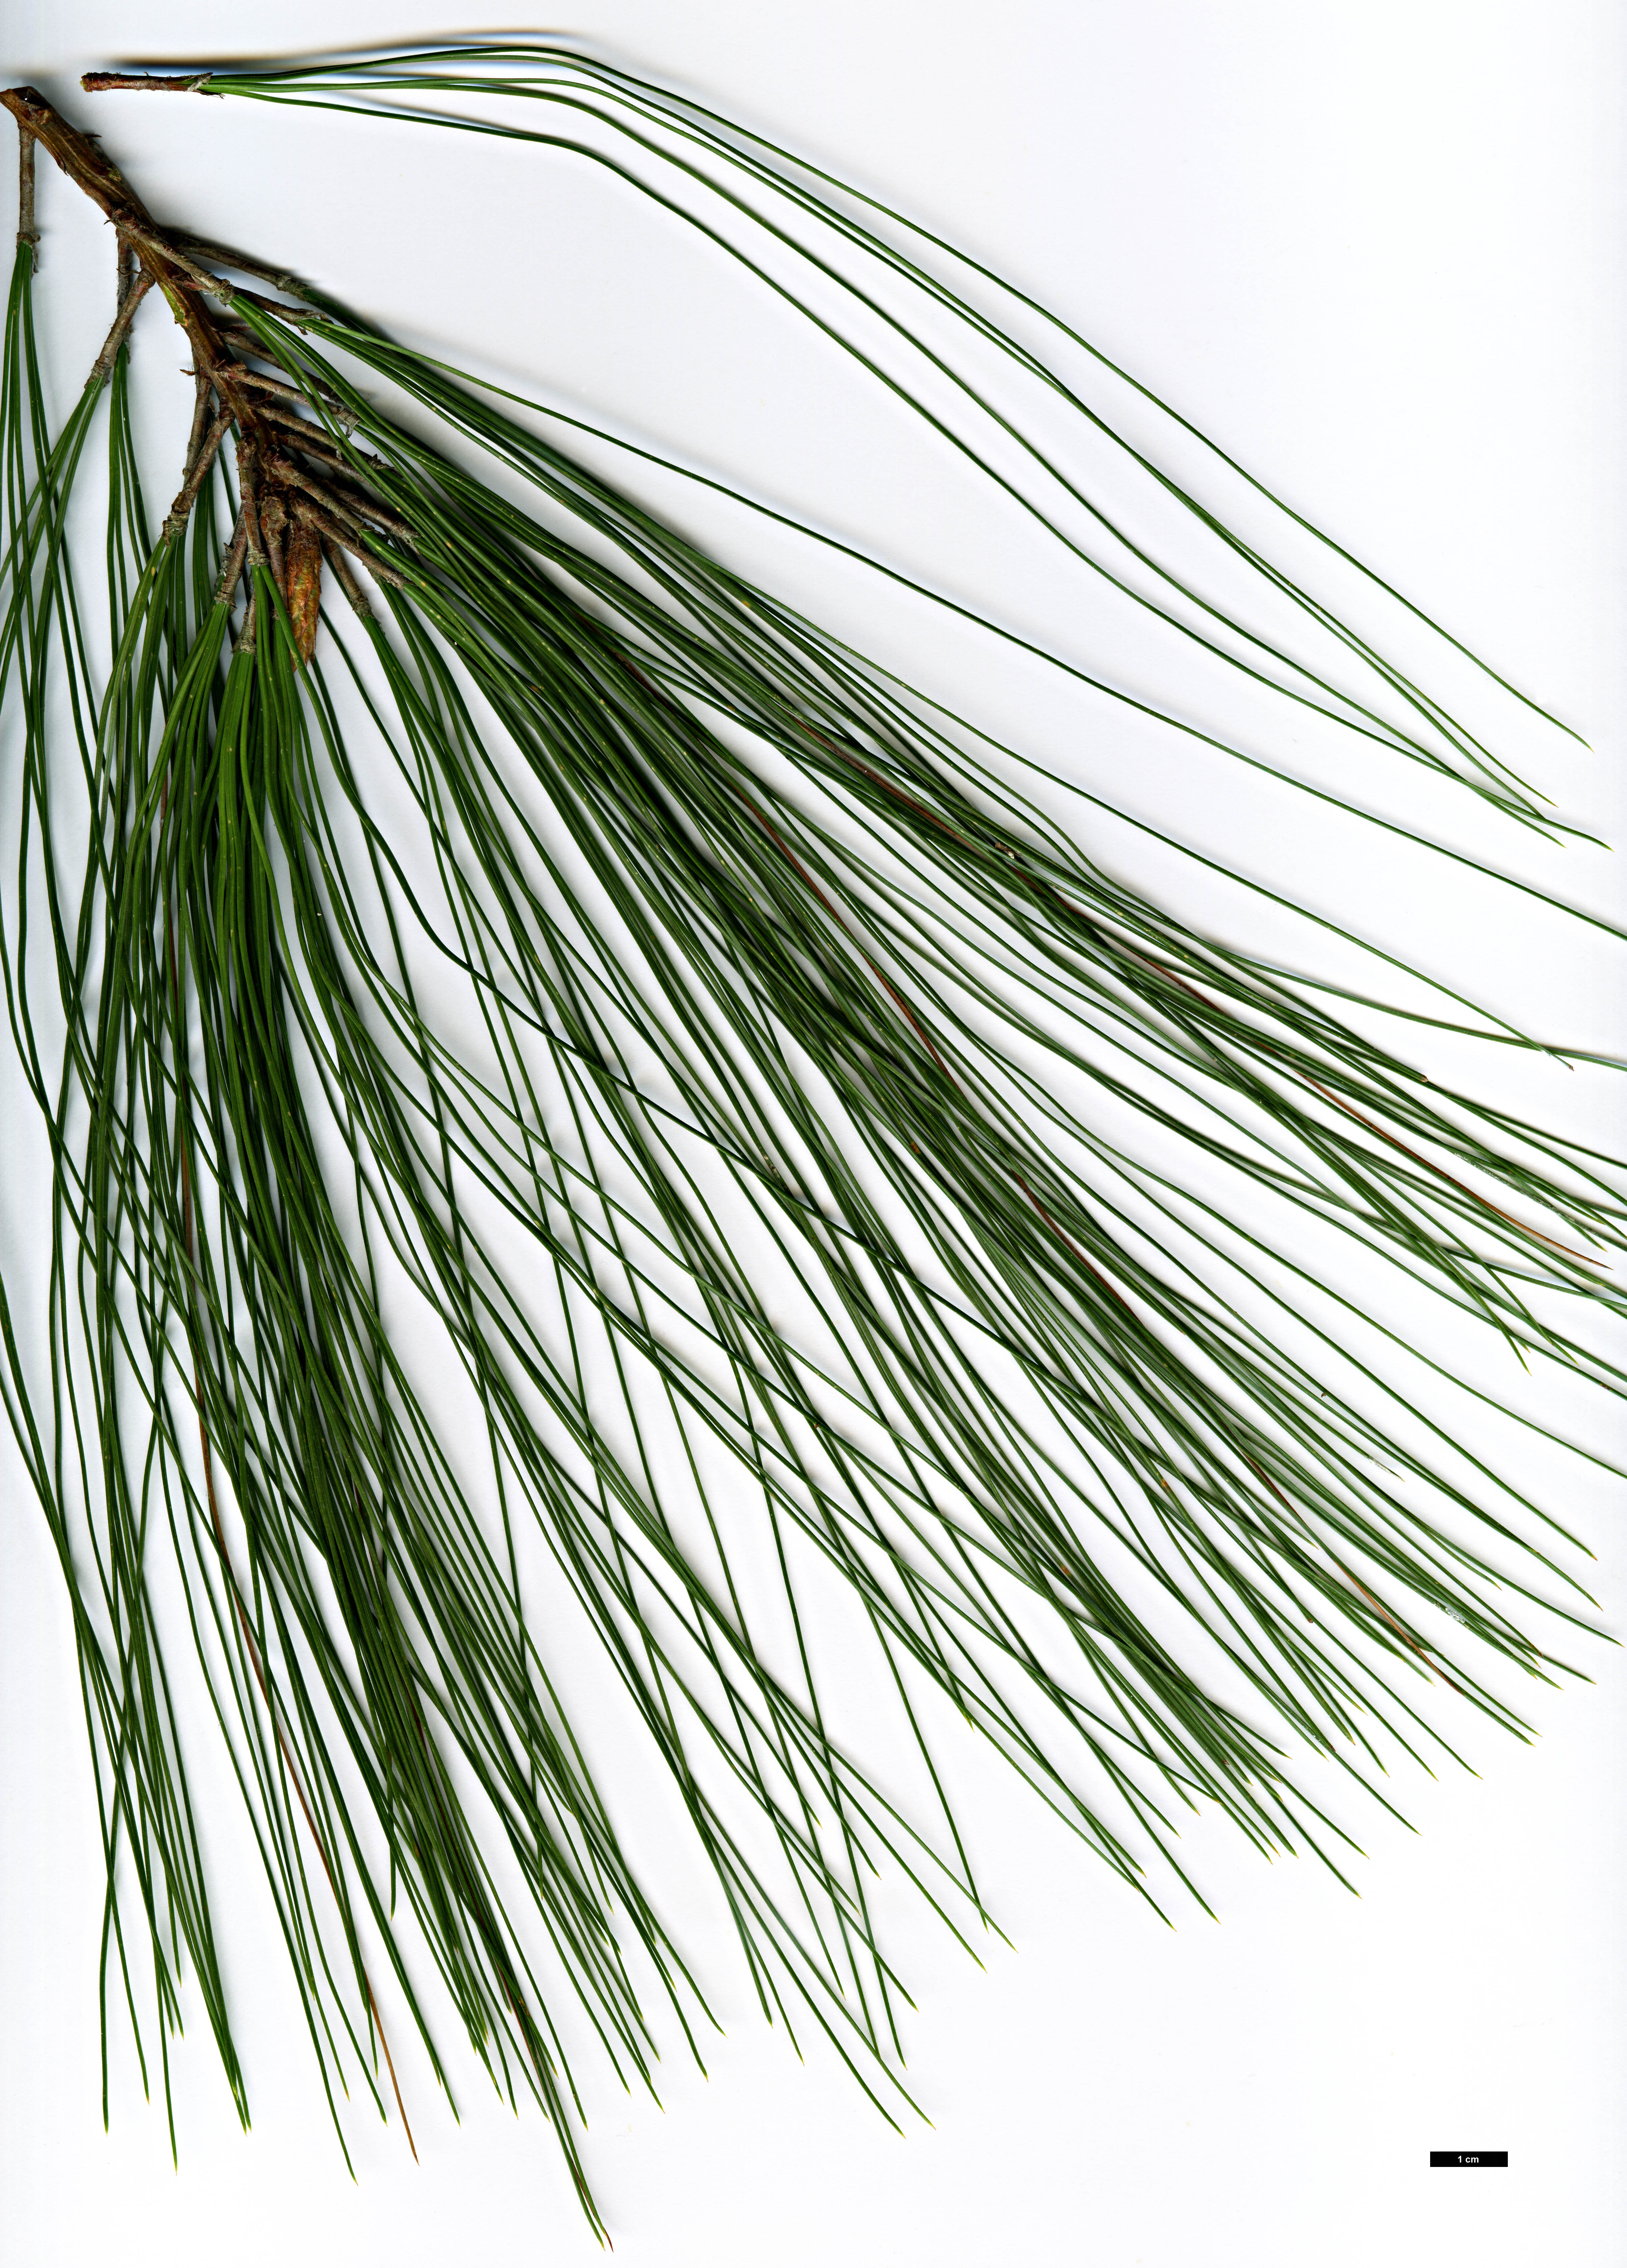 High resolution image: Family: Pinaceae - Genus: Pinus - Taxon: pseudostrobus - SpeciesSub: var. apulcensis